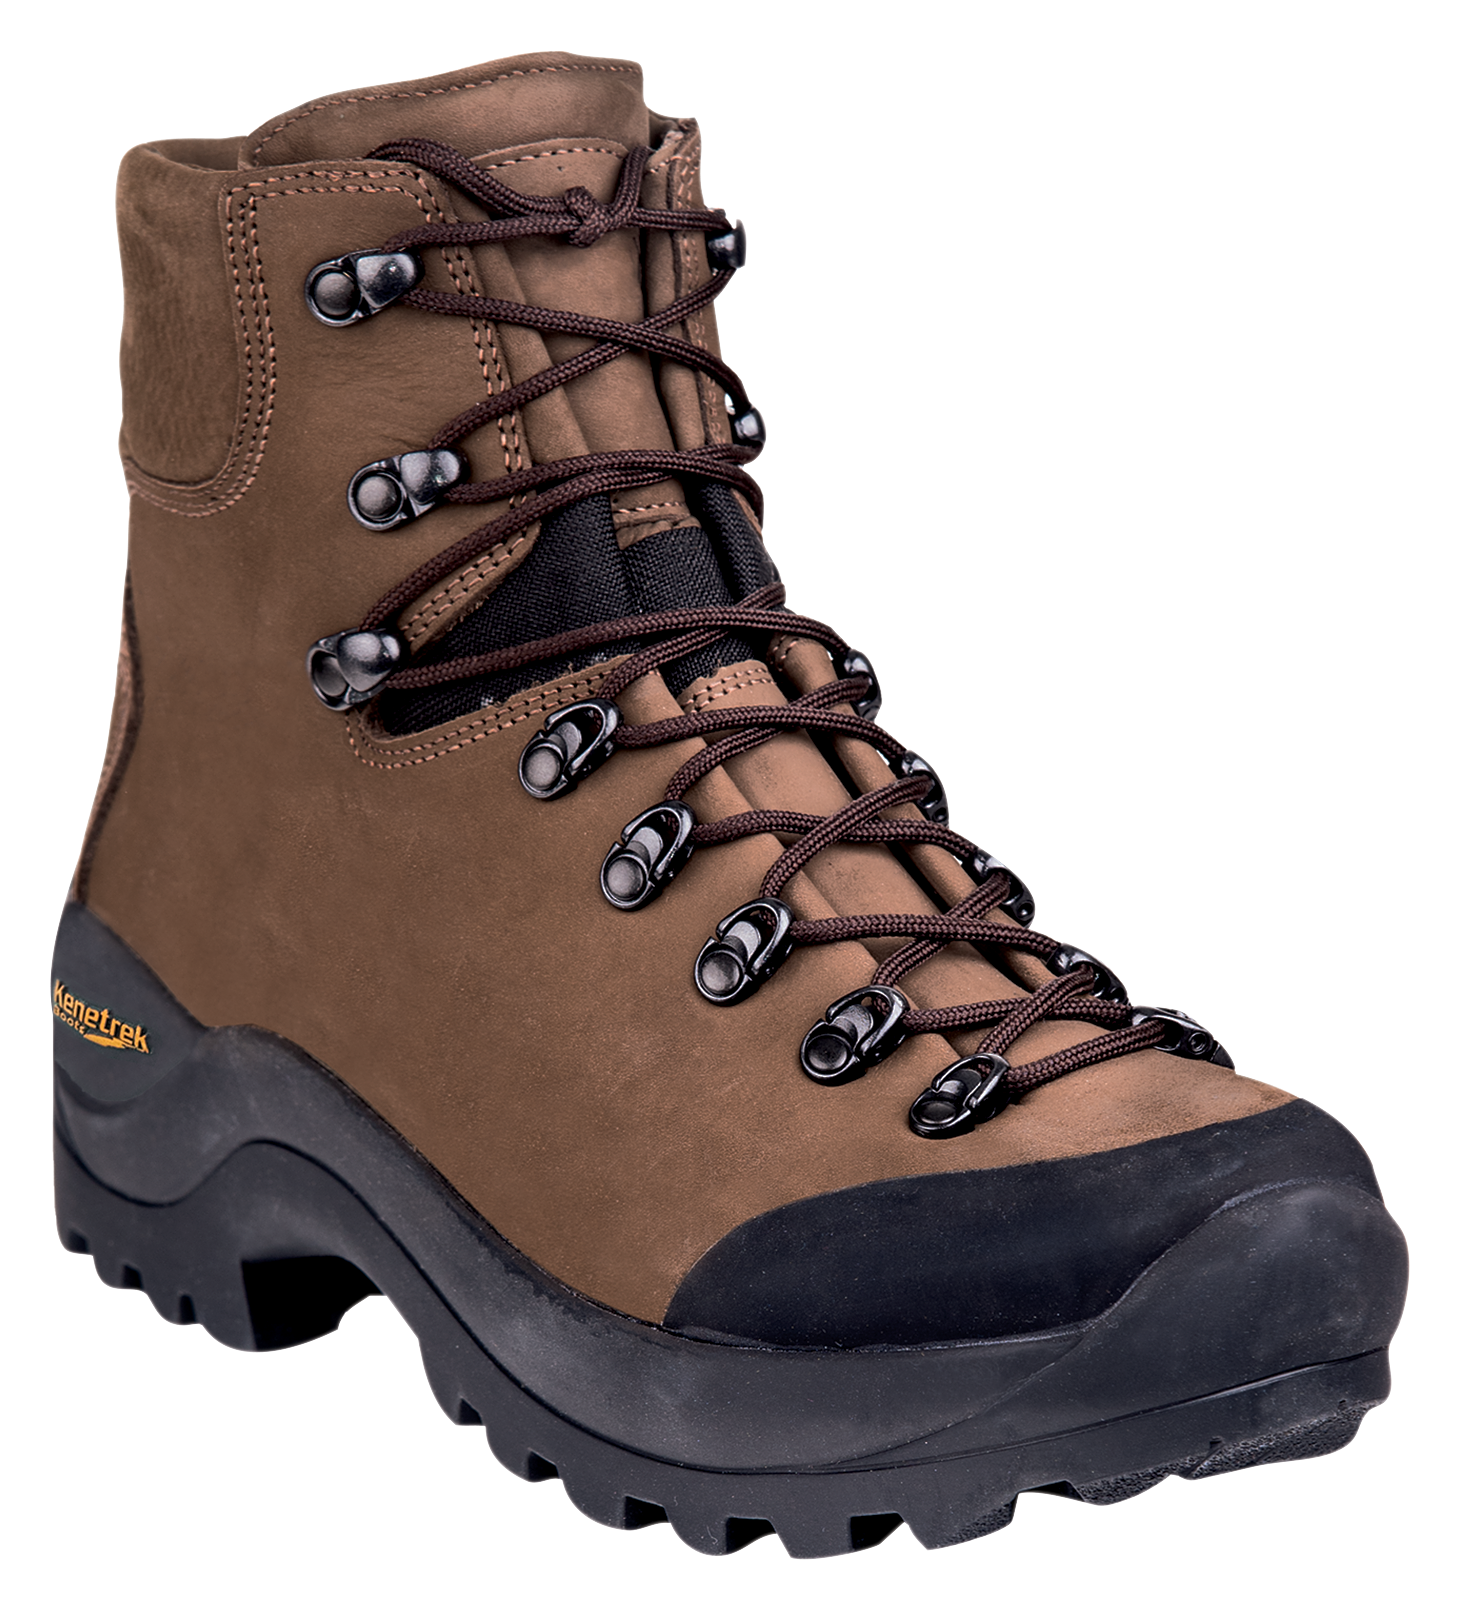 Kenetrek Desert Guide Hunting Boots for Men - Brown - 13M